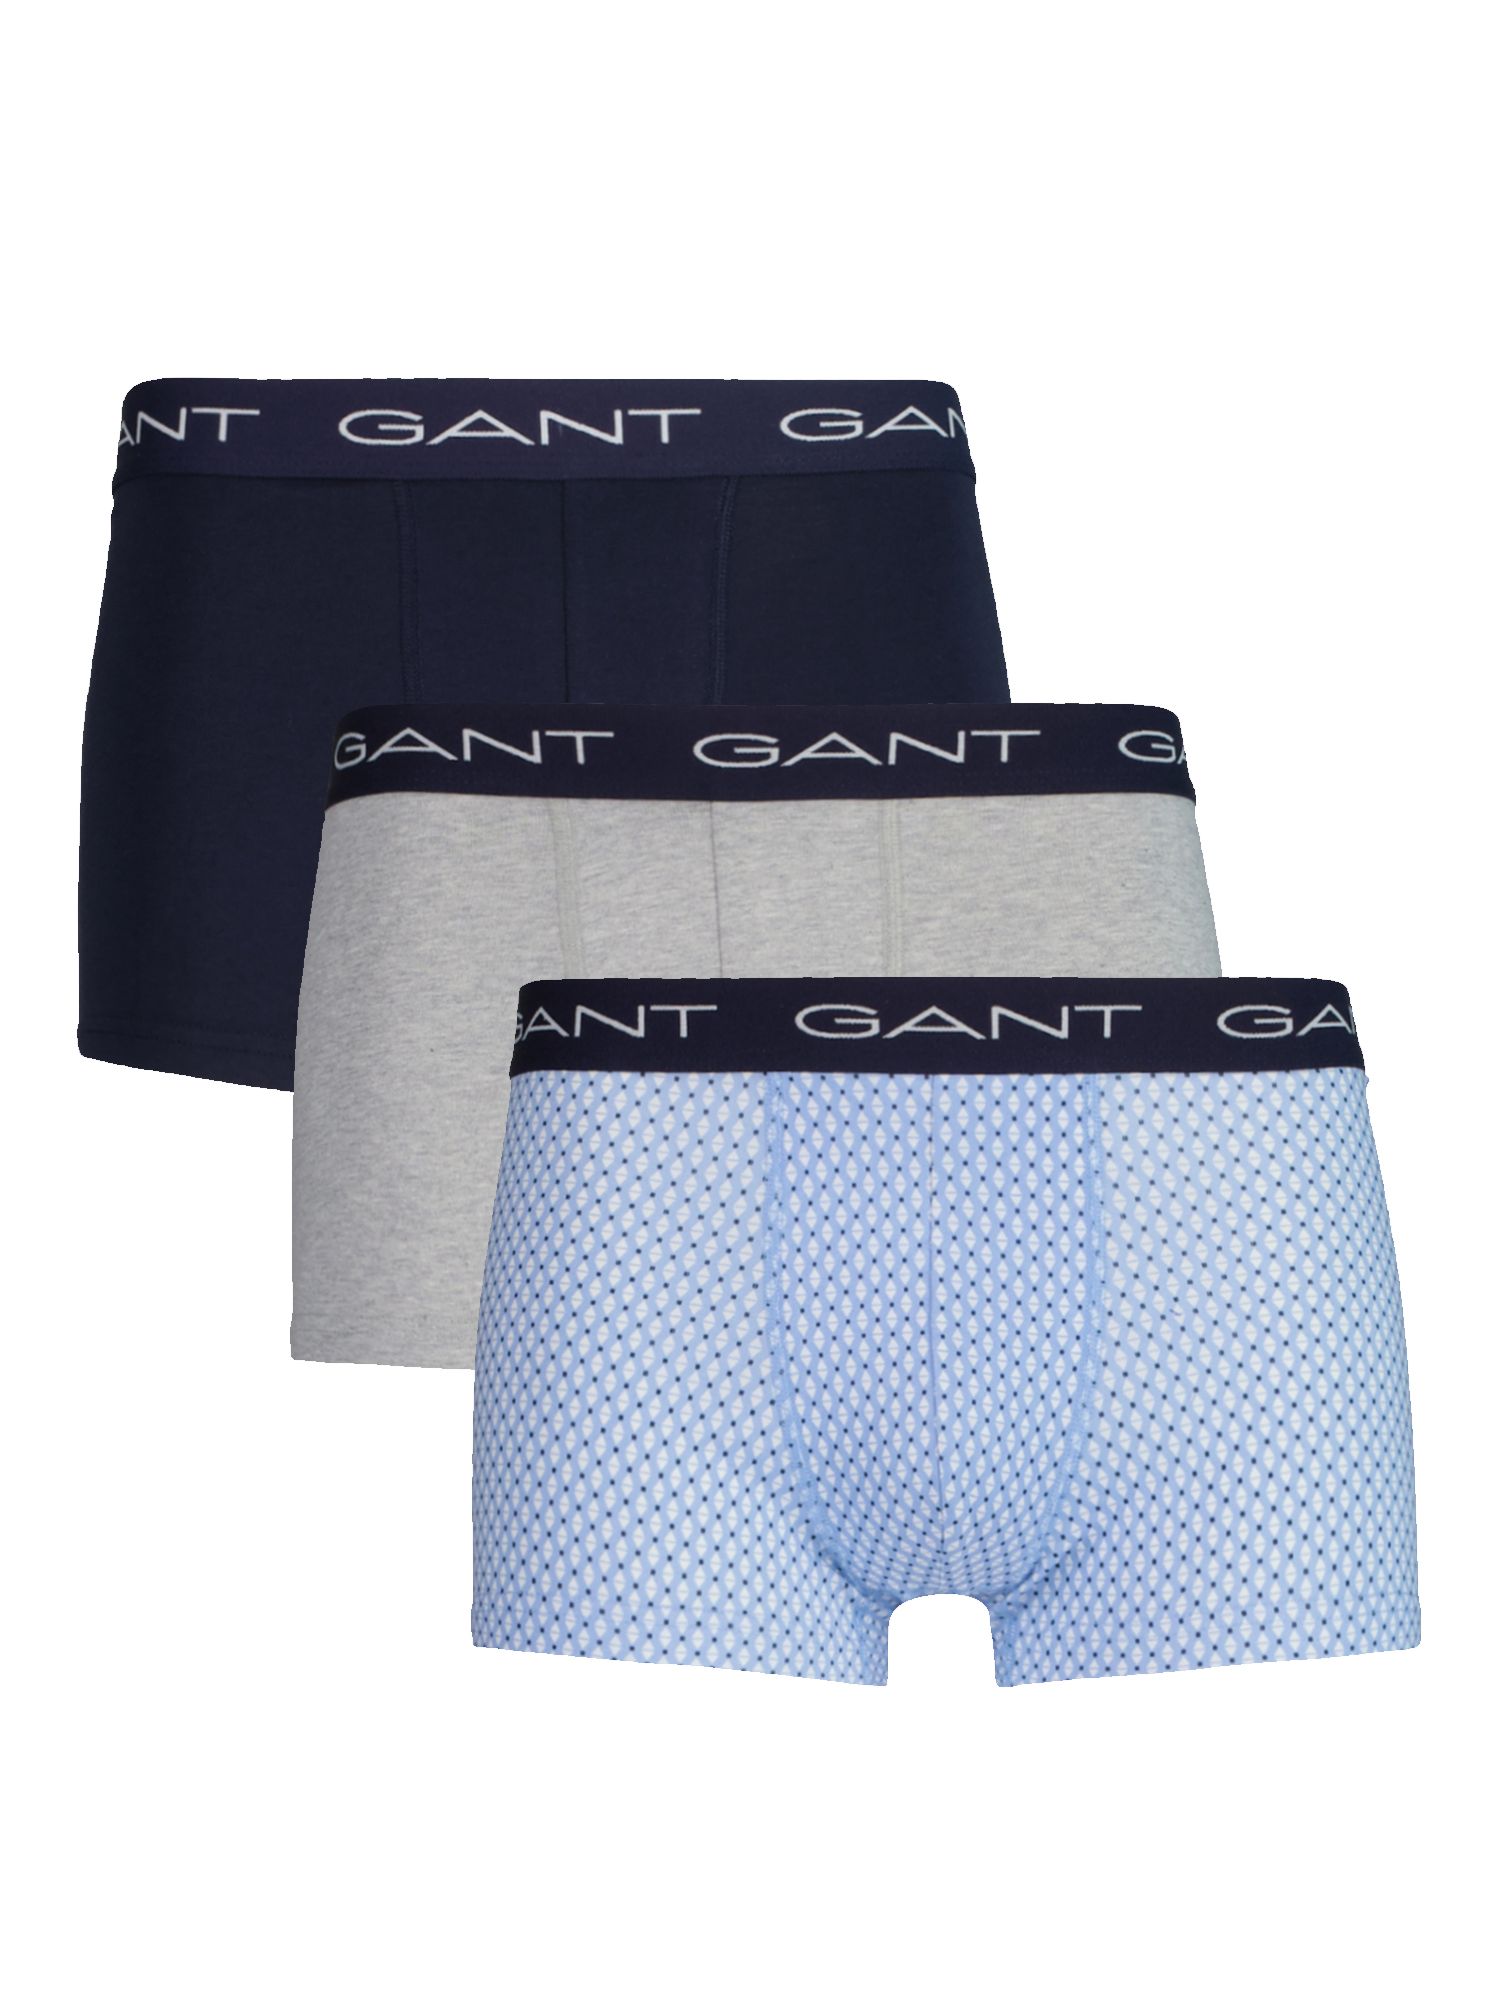 GANT Micro Print Trunks, Pack of 3, Blue, S